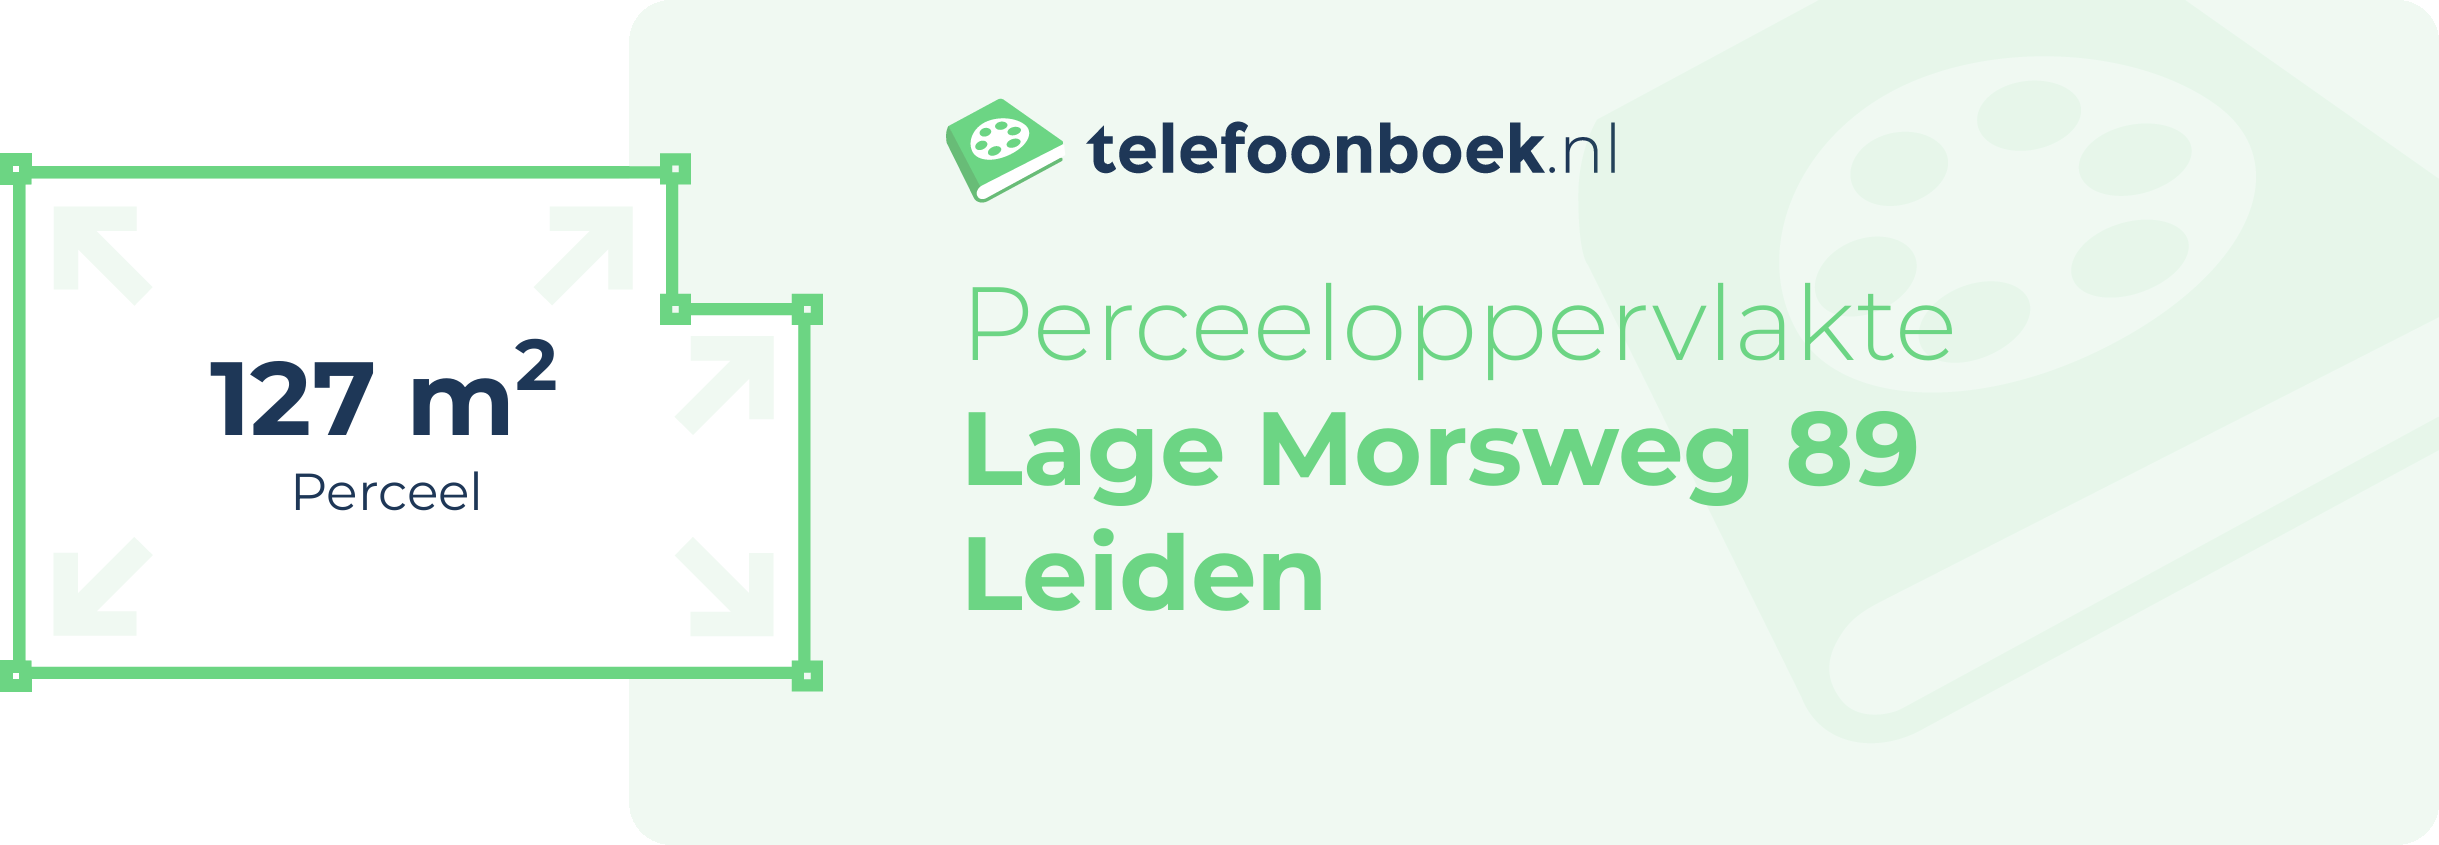 Perceeloppervlakte Lage Morsweg 89 Leiden